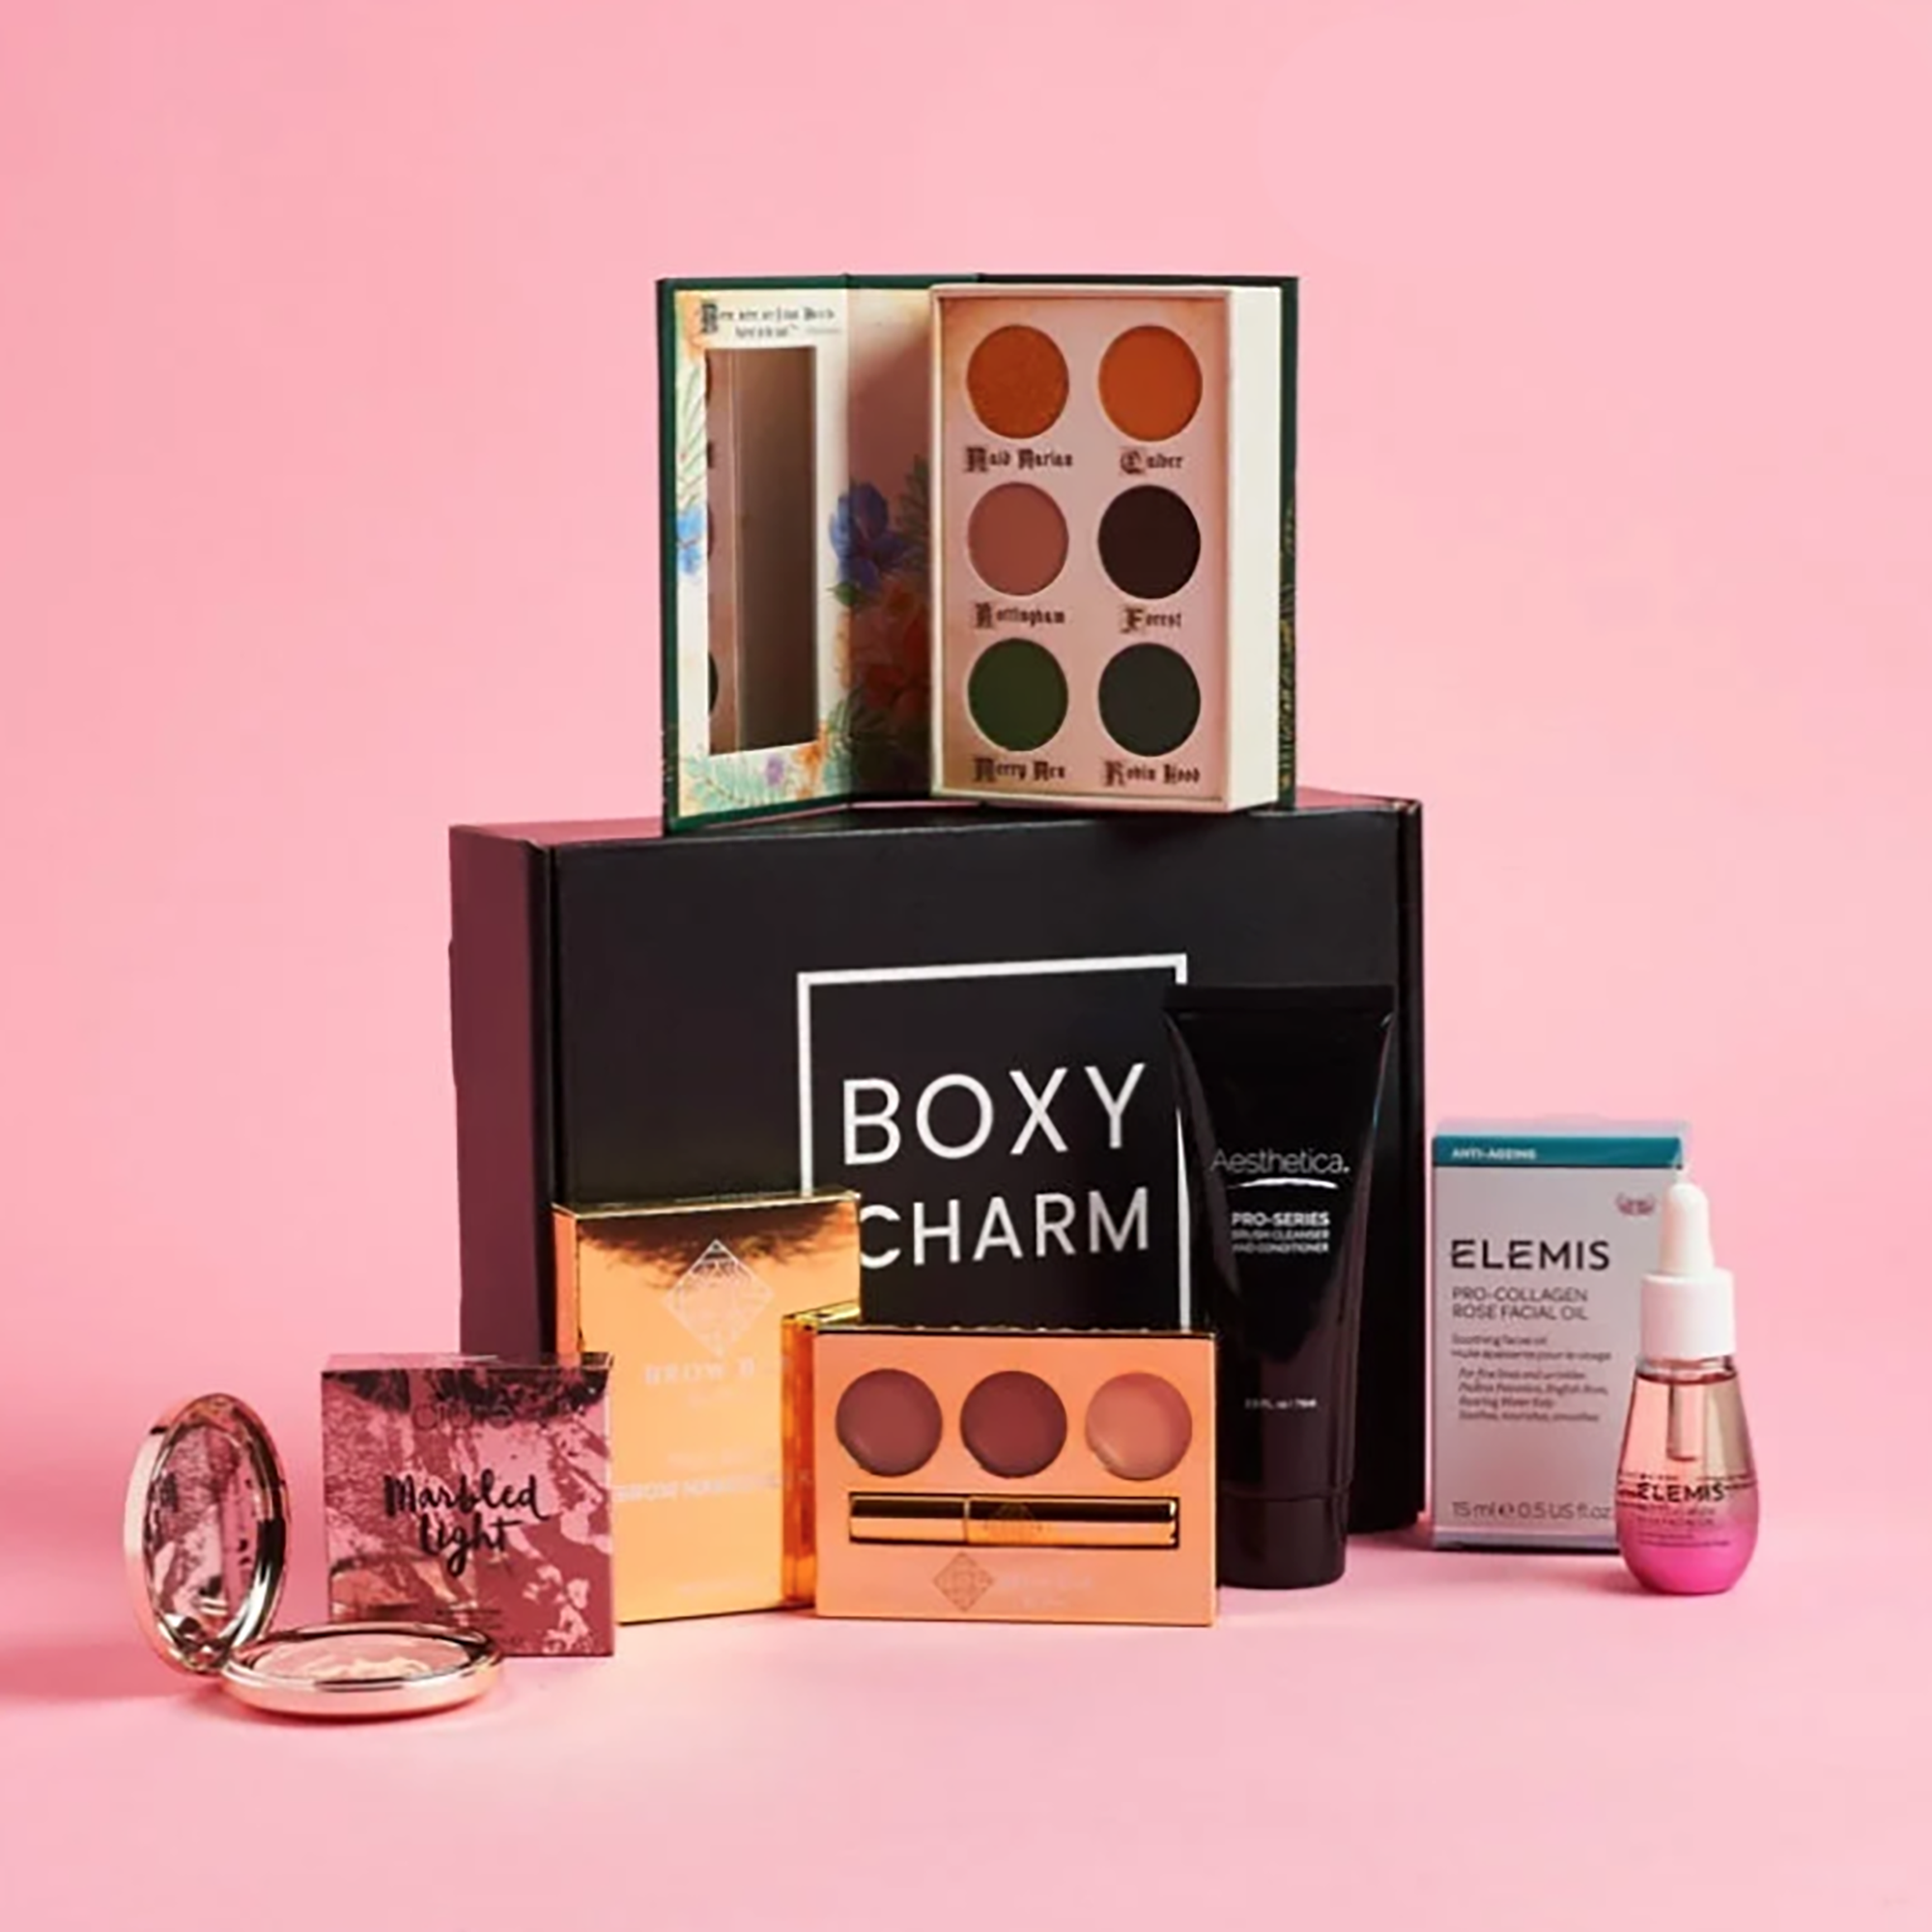 Boxy Charm box